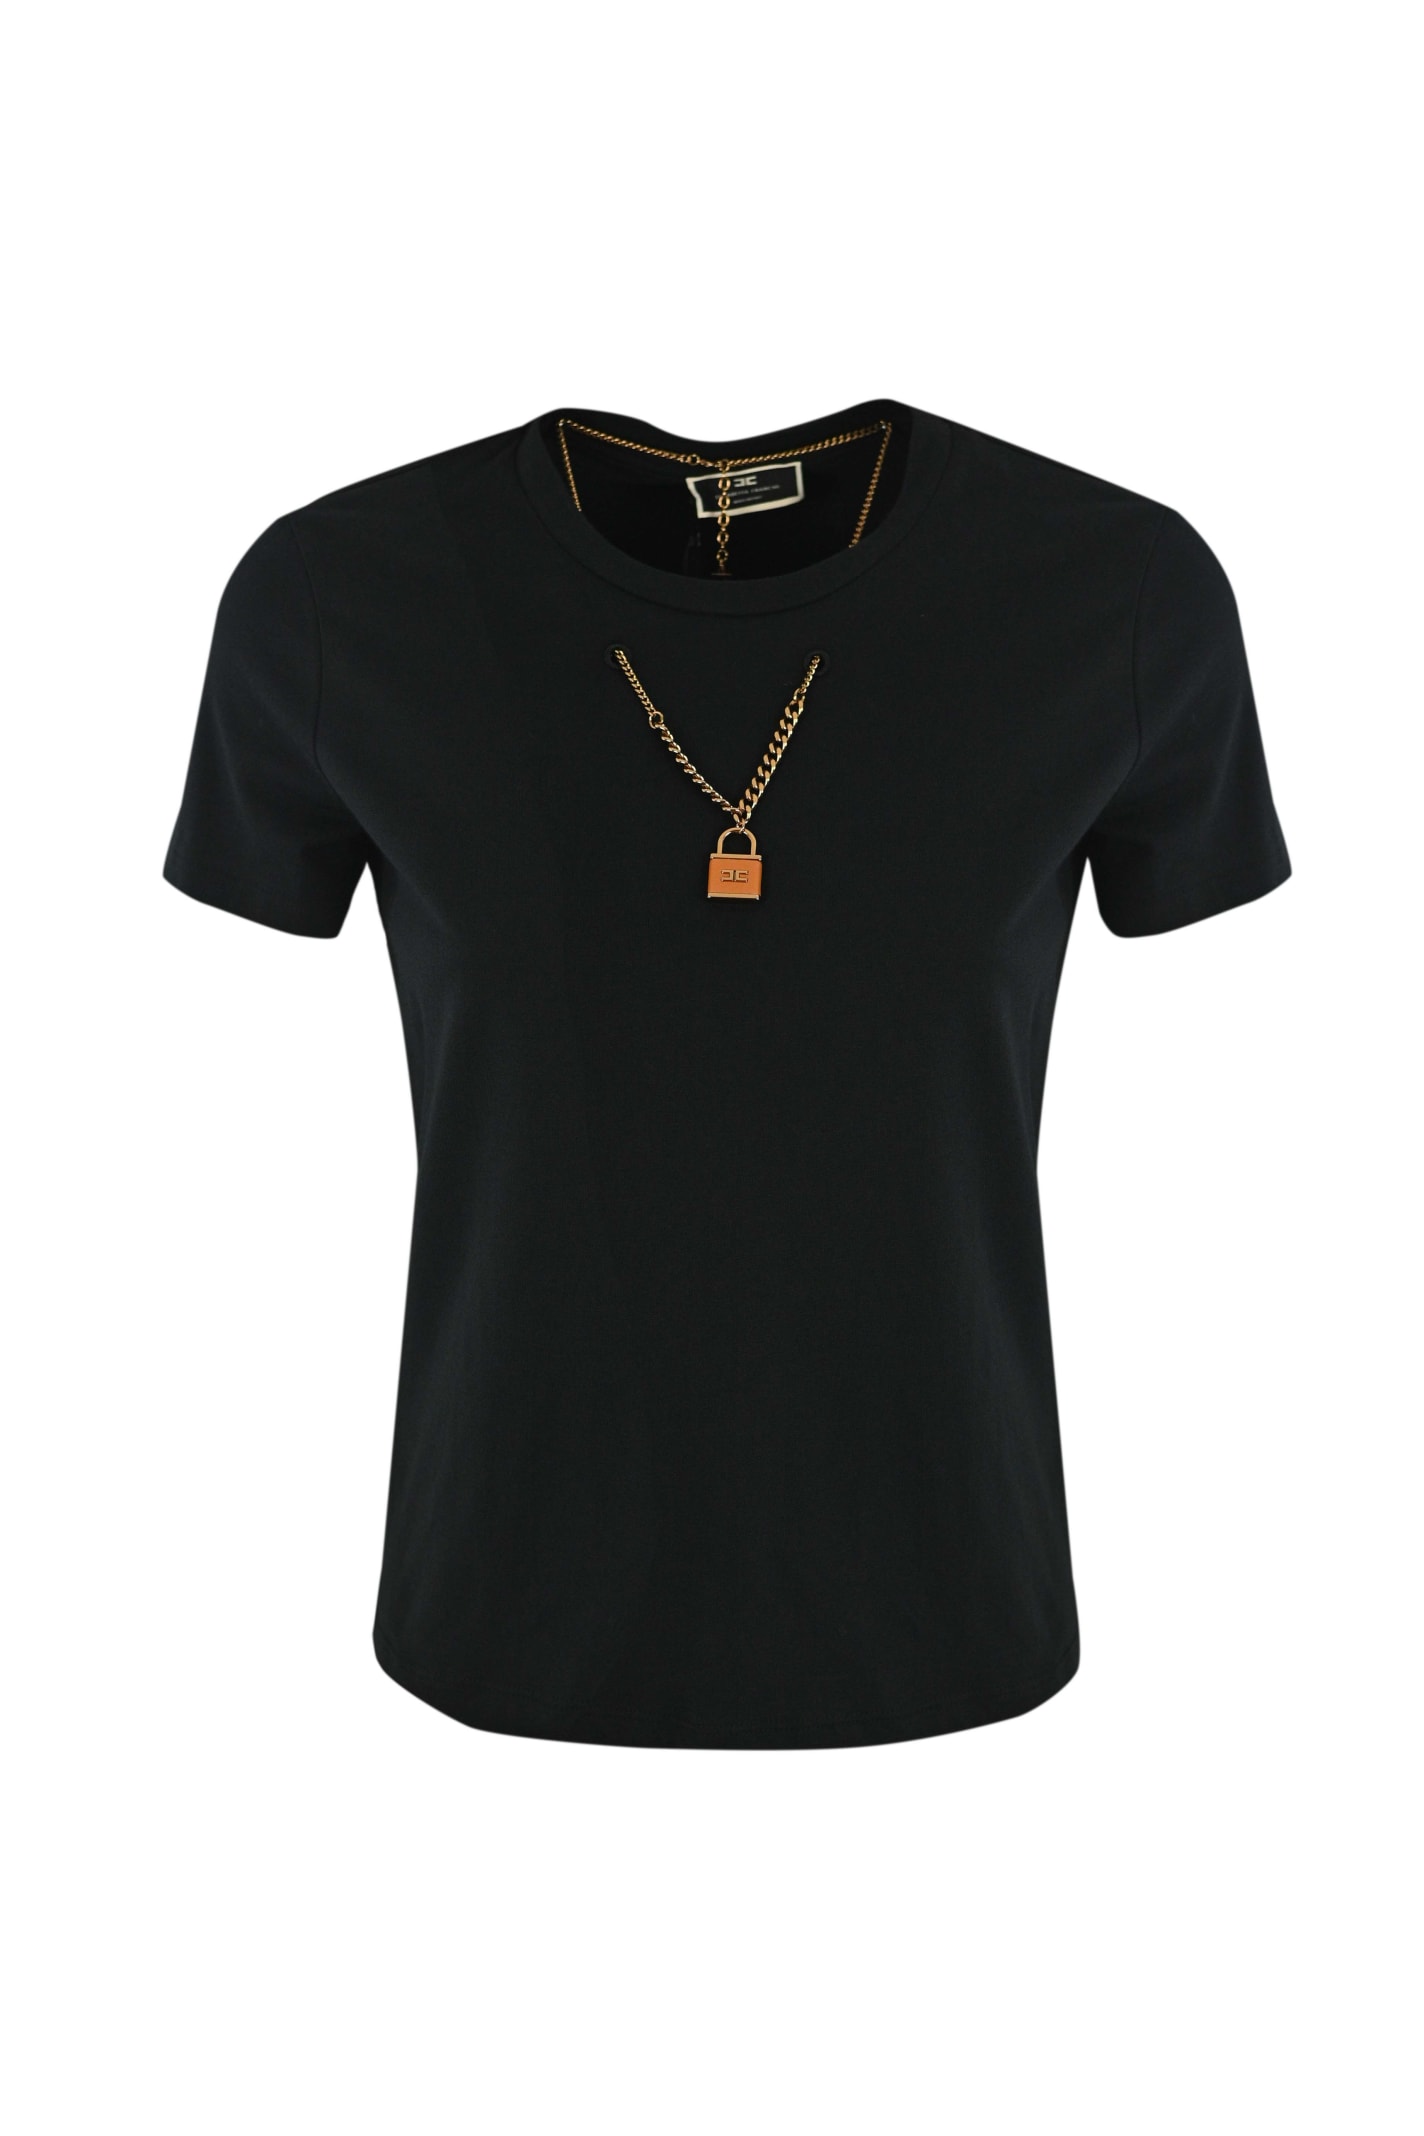 Elisabetta Franchi Crewneck T-shirt With Double Chain Necklace